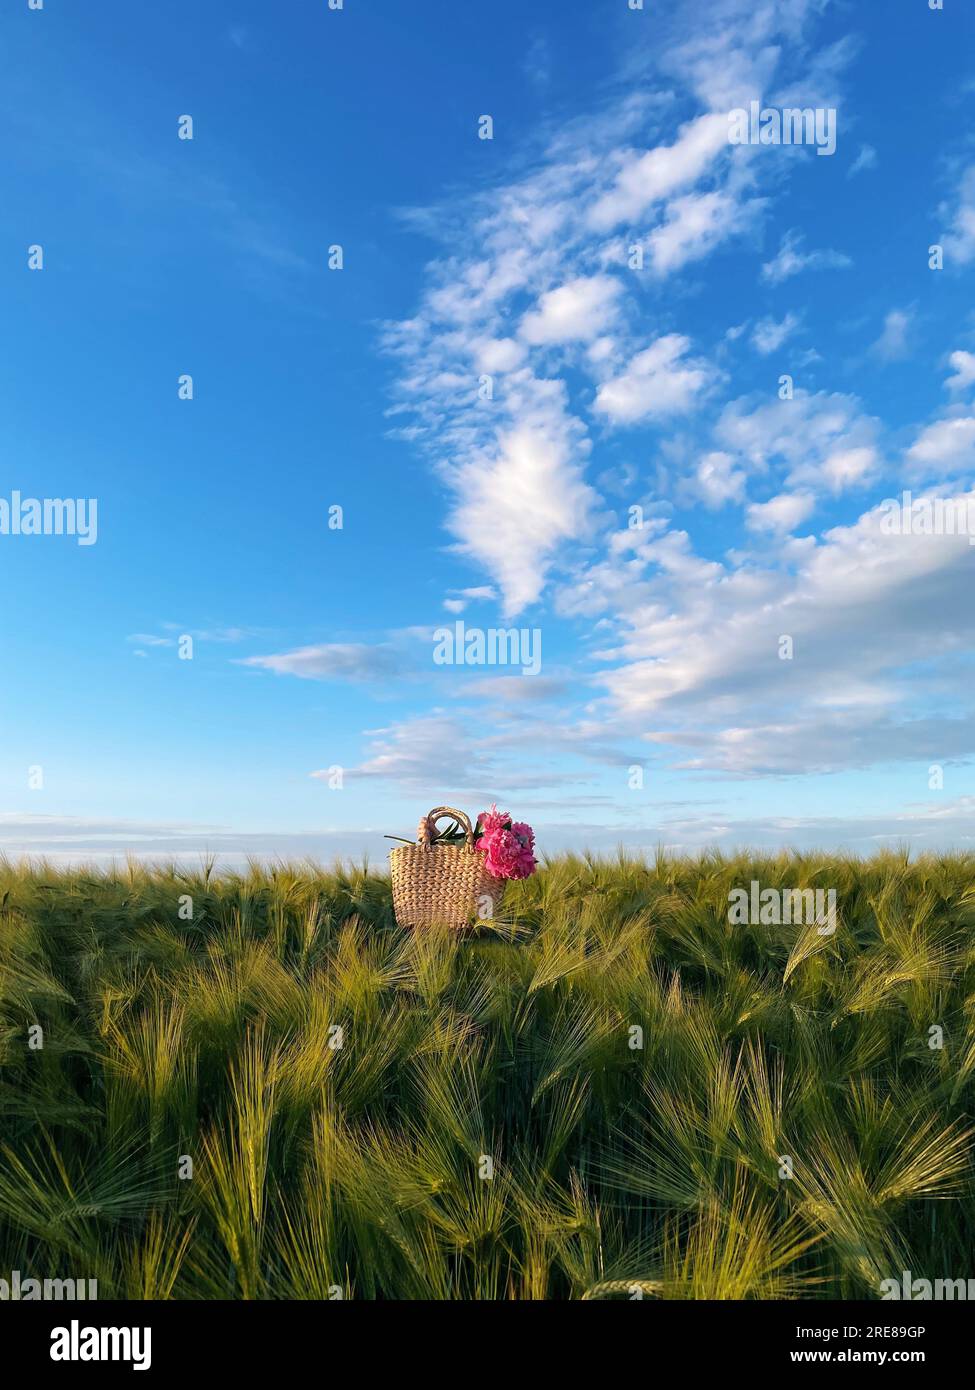 Panier rempli de fleurs de pivoine roses dans un champ de blé en été, Biélorussie Banque D'Images